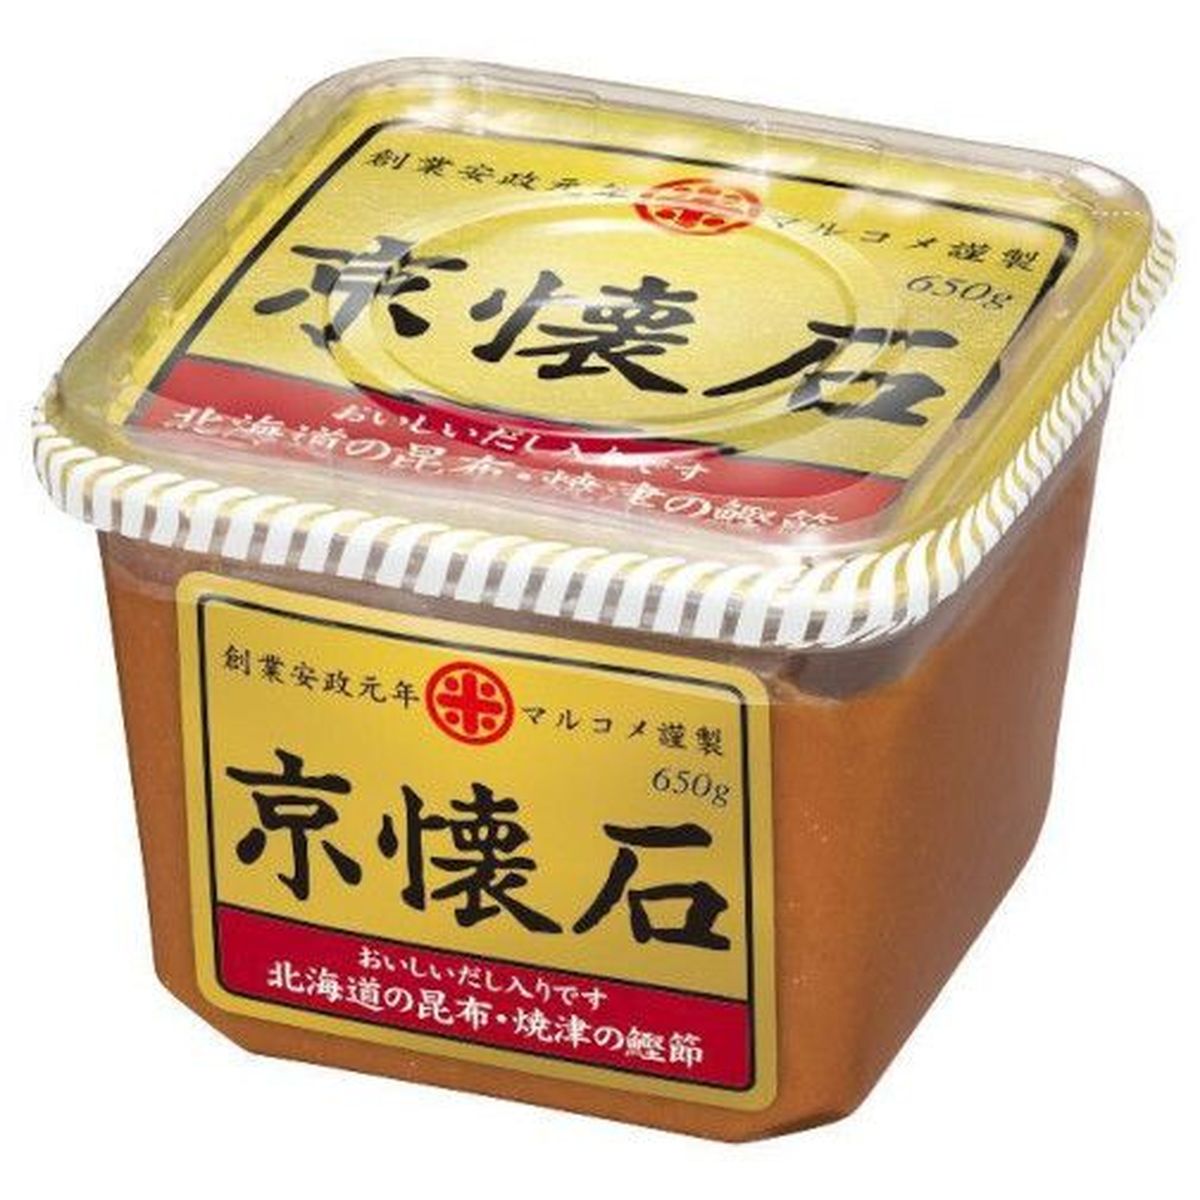 【商品の説明】風味豊かな信州赤系みそに、「北海道の昆布、焼津の鰹節だし入り」でおいしいだし入りみそをお楽しみ頂けます。賞味期限：12ヶ月パスタ